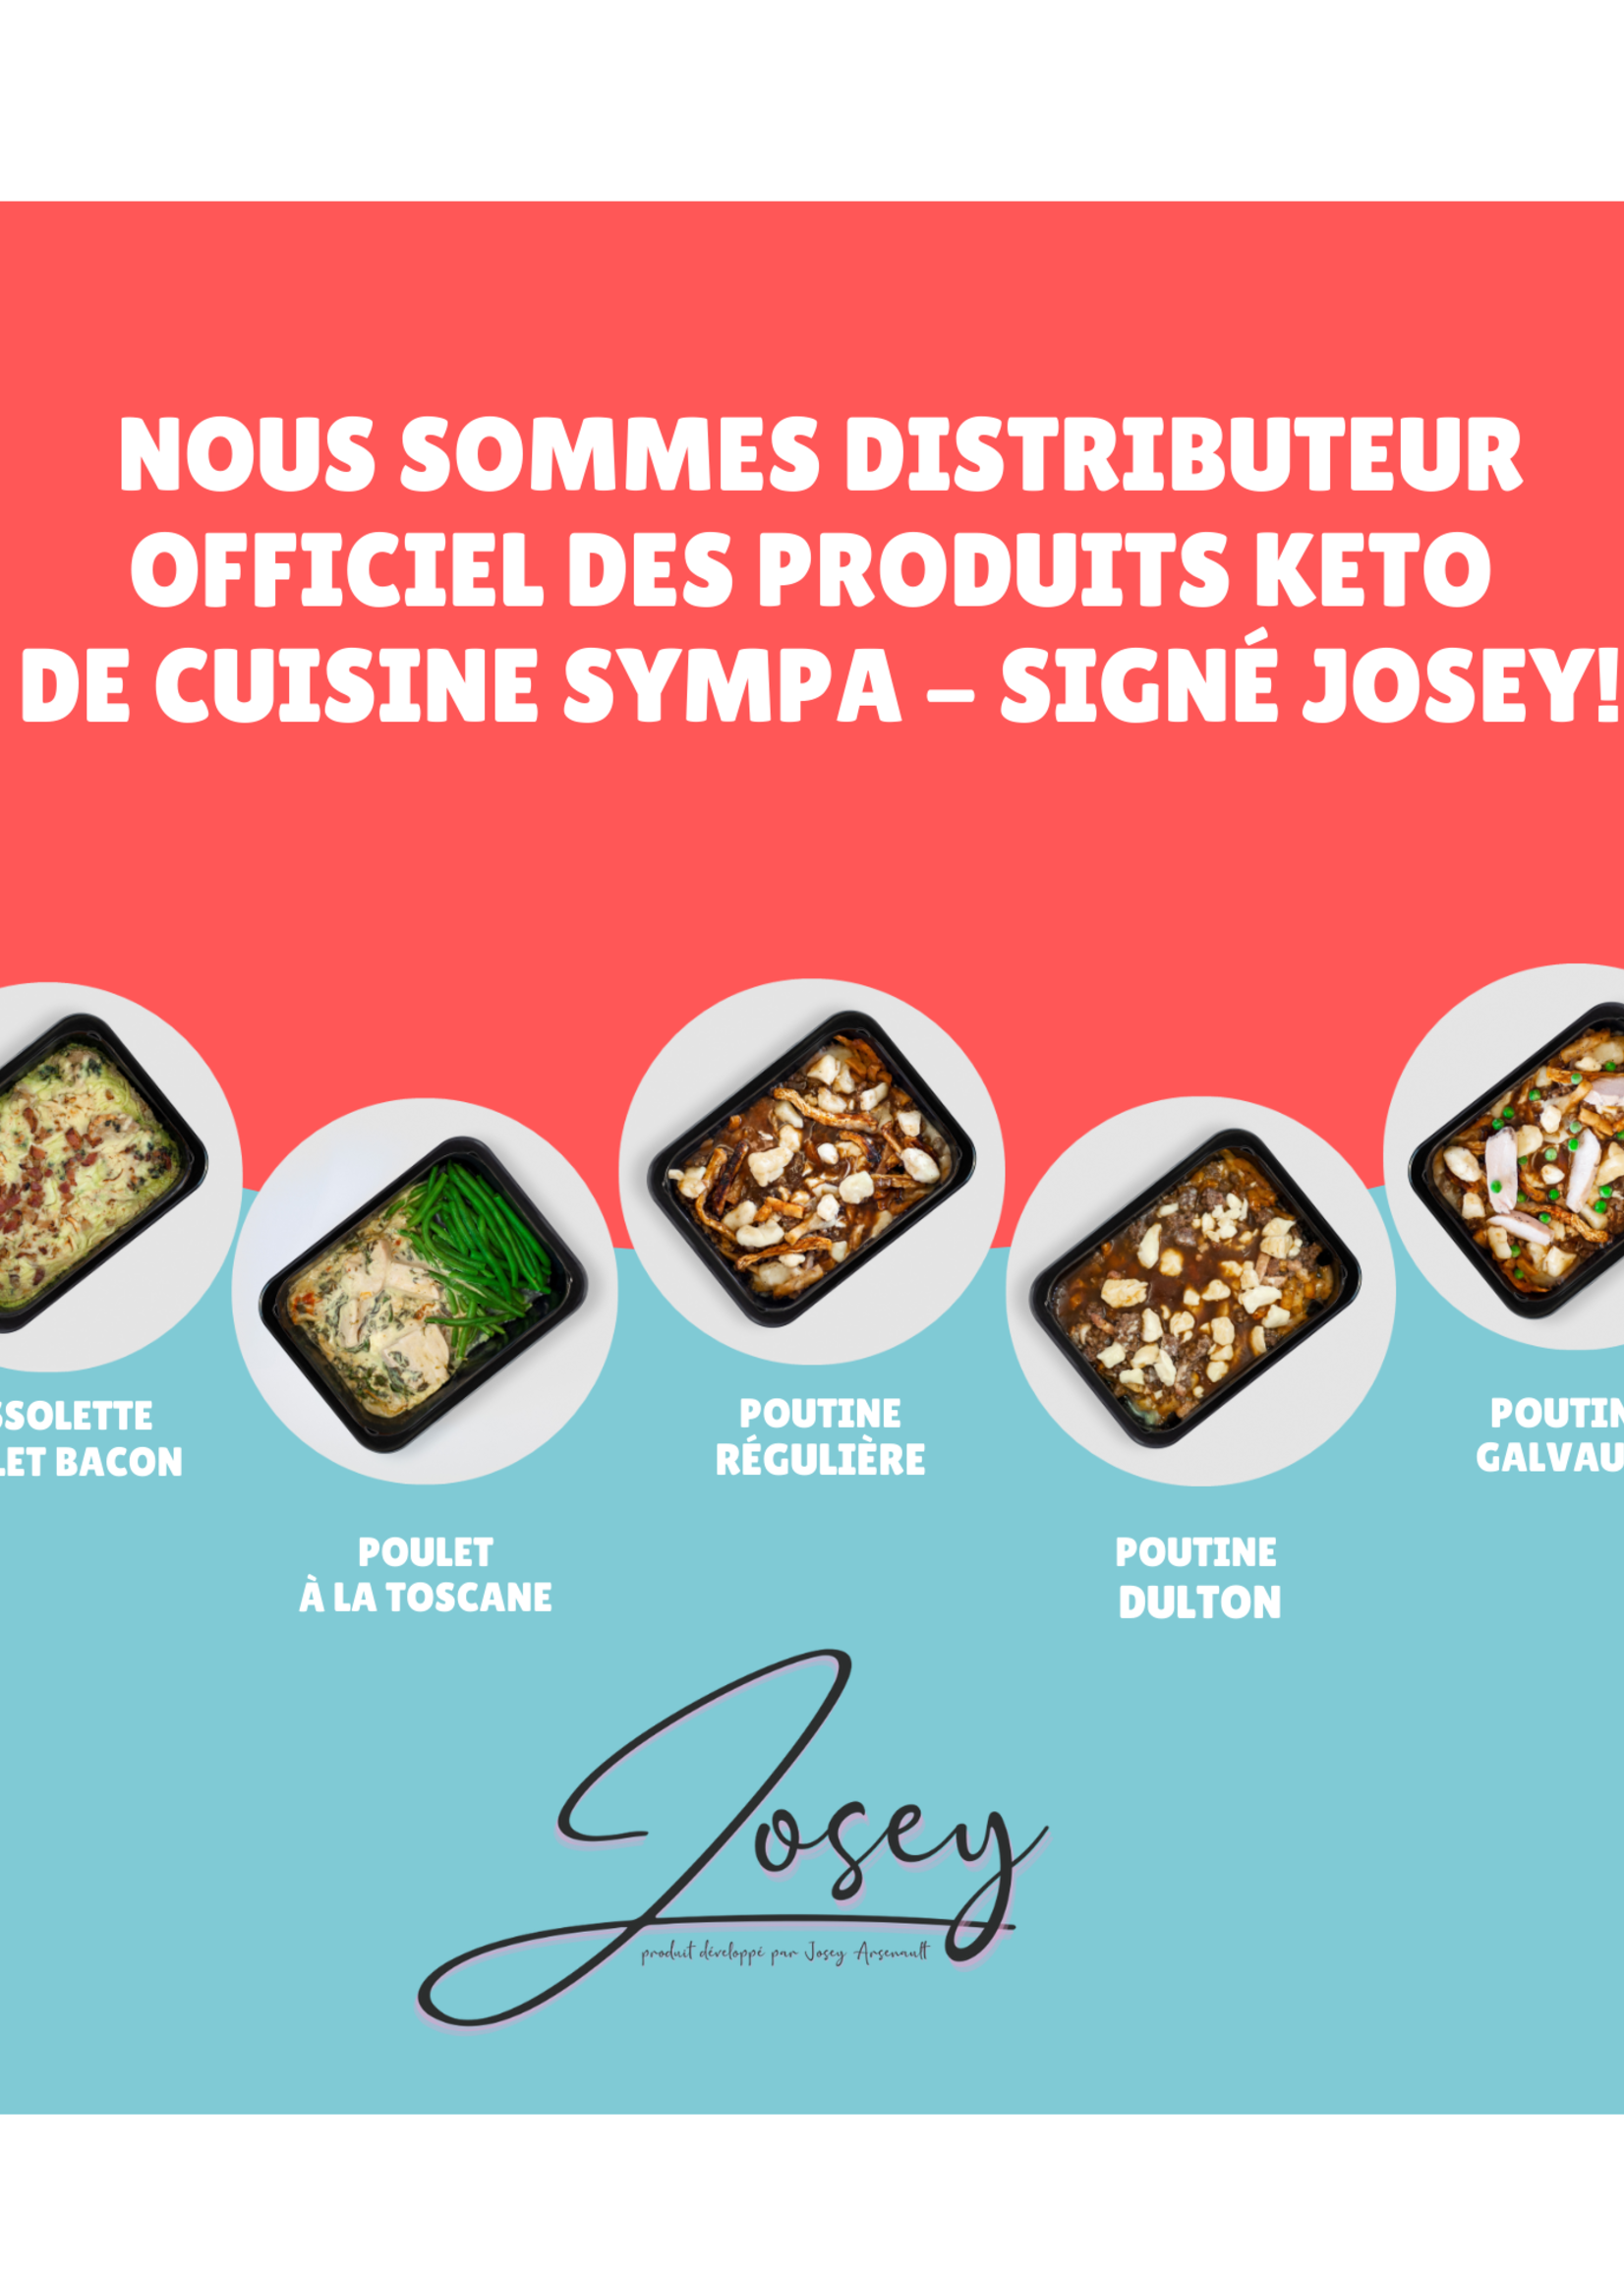 Cuisine Sympa Repas signé Josey - Cuisine Sympa